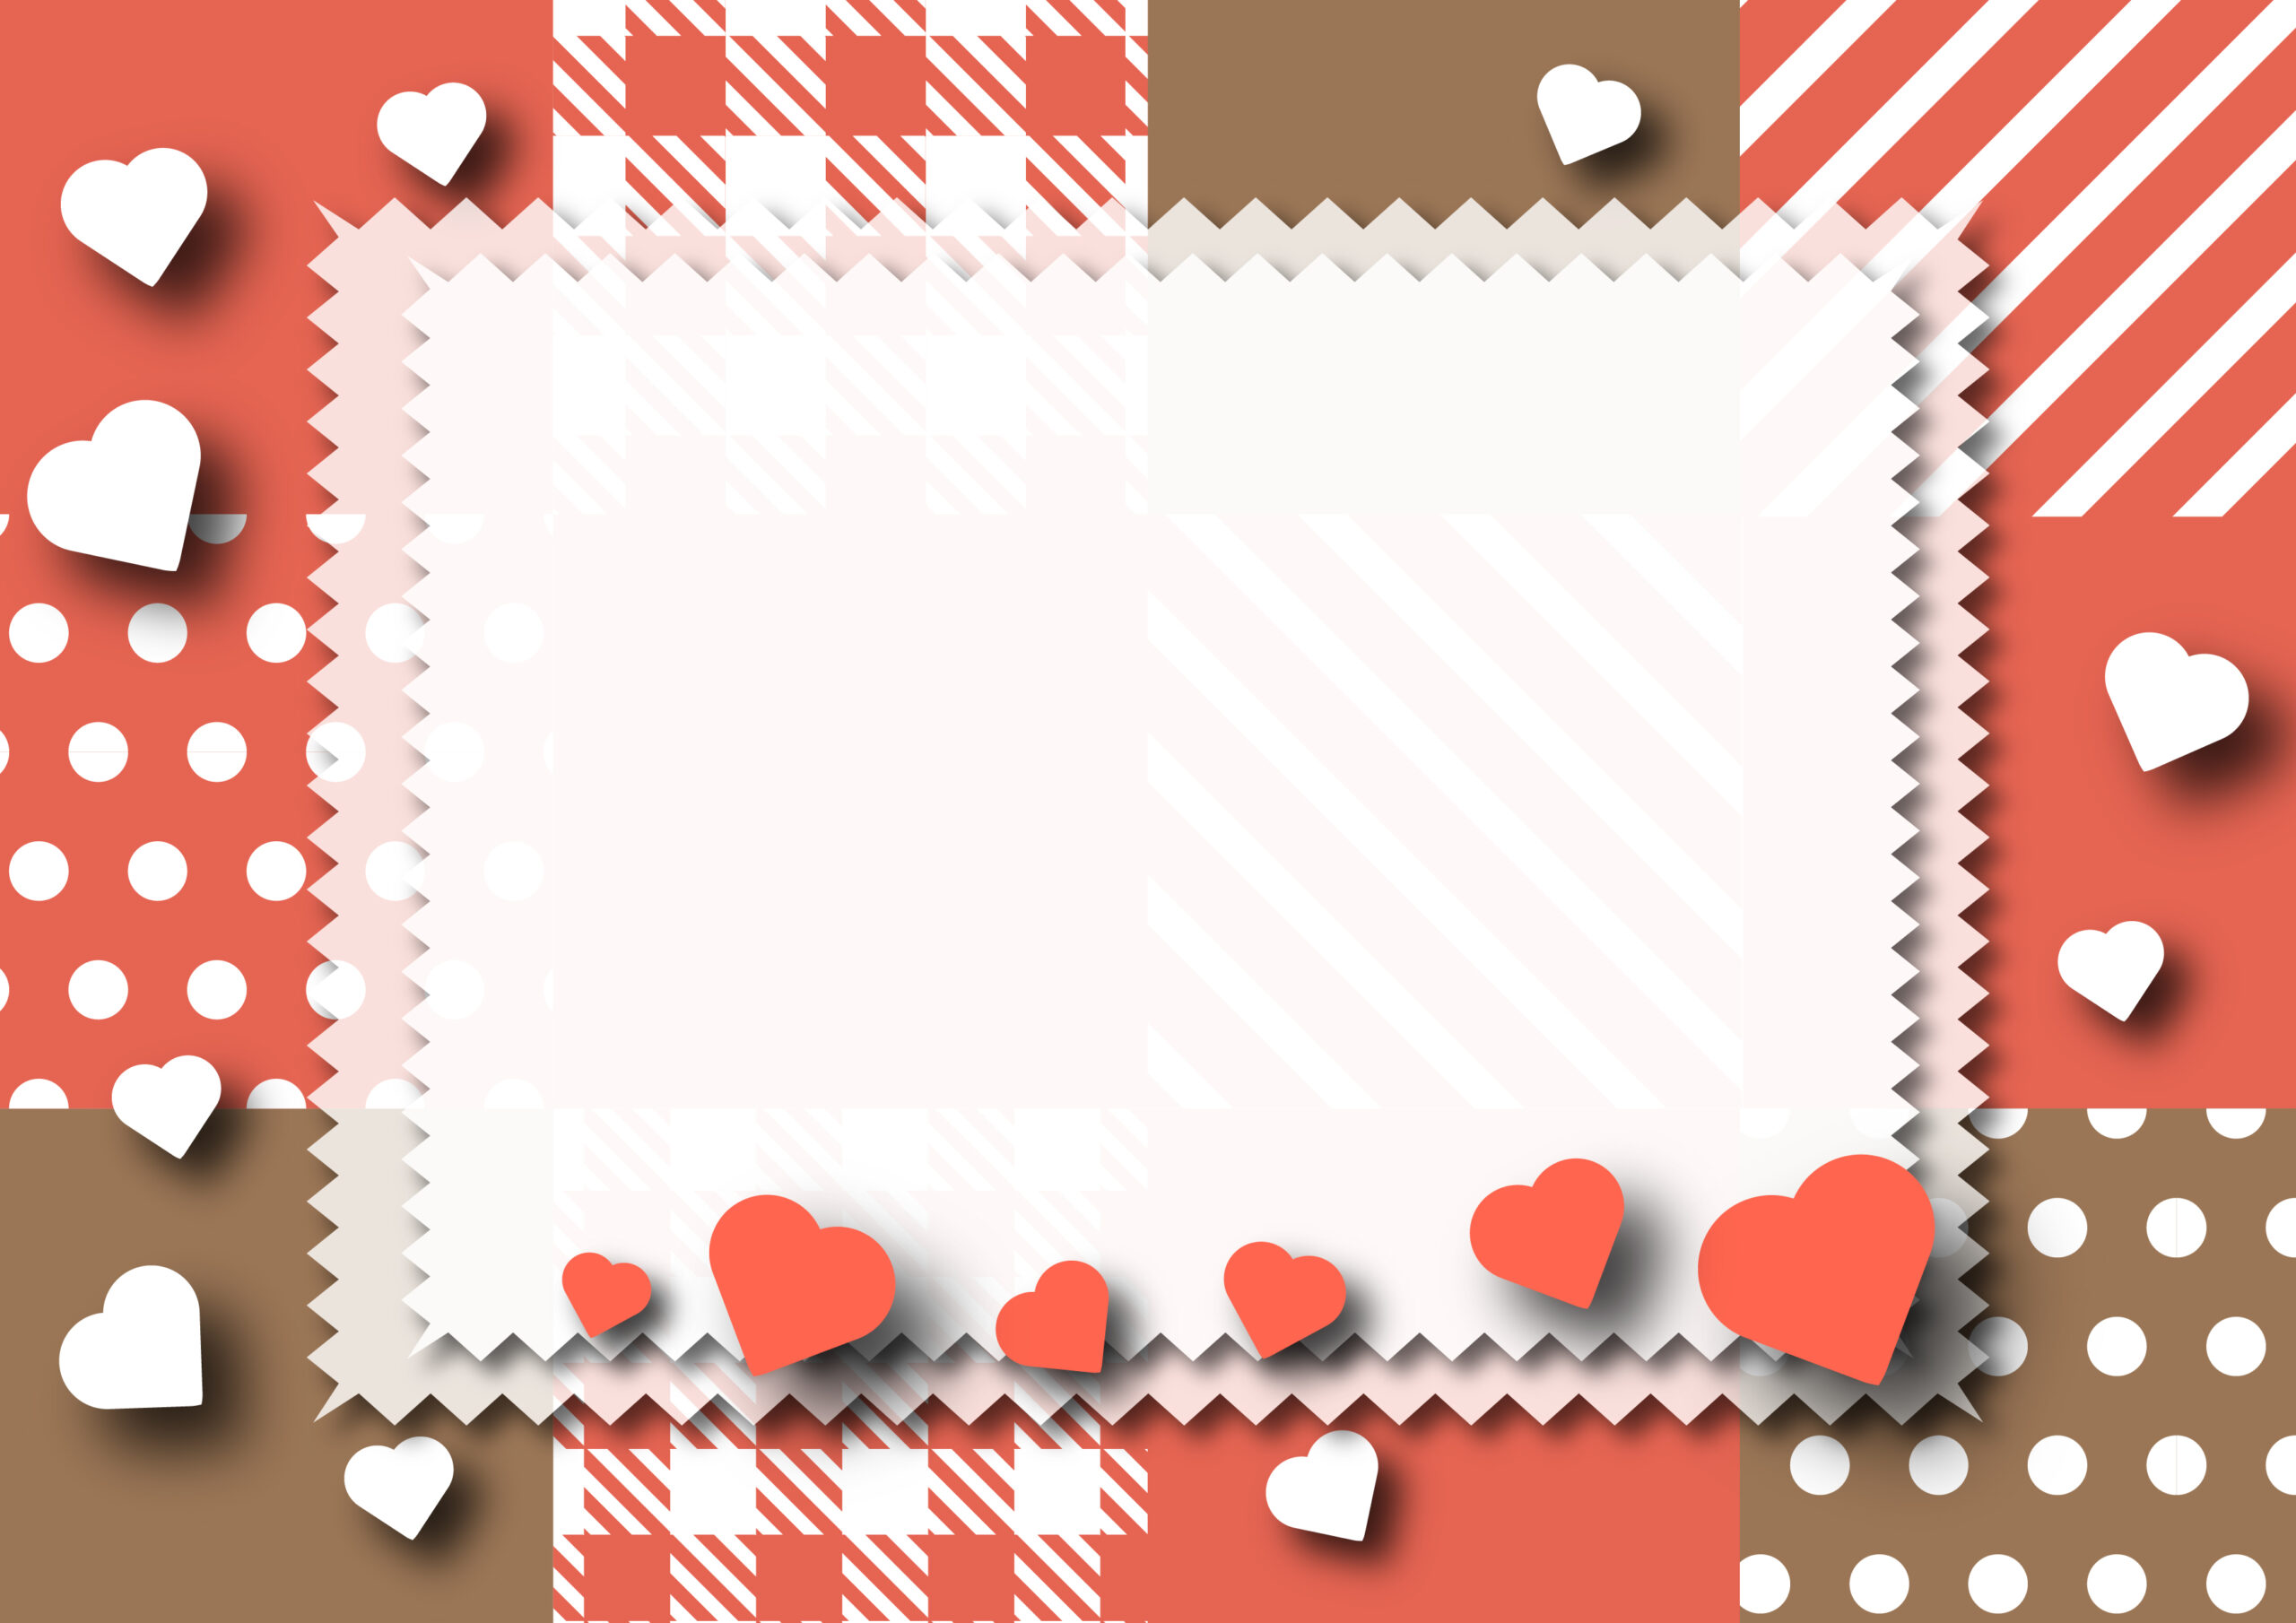 2月14日のバレンタインイベントの張り紙に使えるハートのイラスト入りのデザインフレーム素材です。お店の看板や壁に貼ったり、ホームページの告知用などにご活用いただけるテンプレートになっております。ダウンロード：JPGA4サイズで印